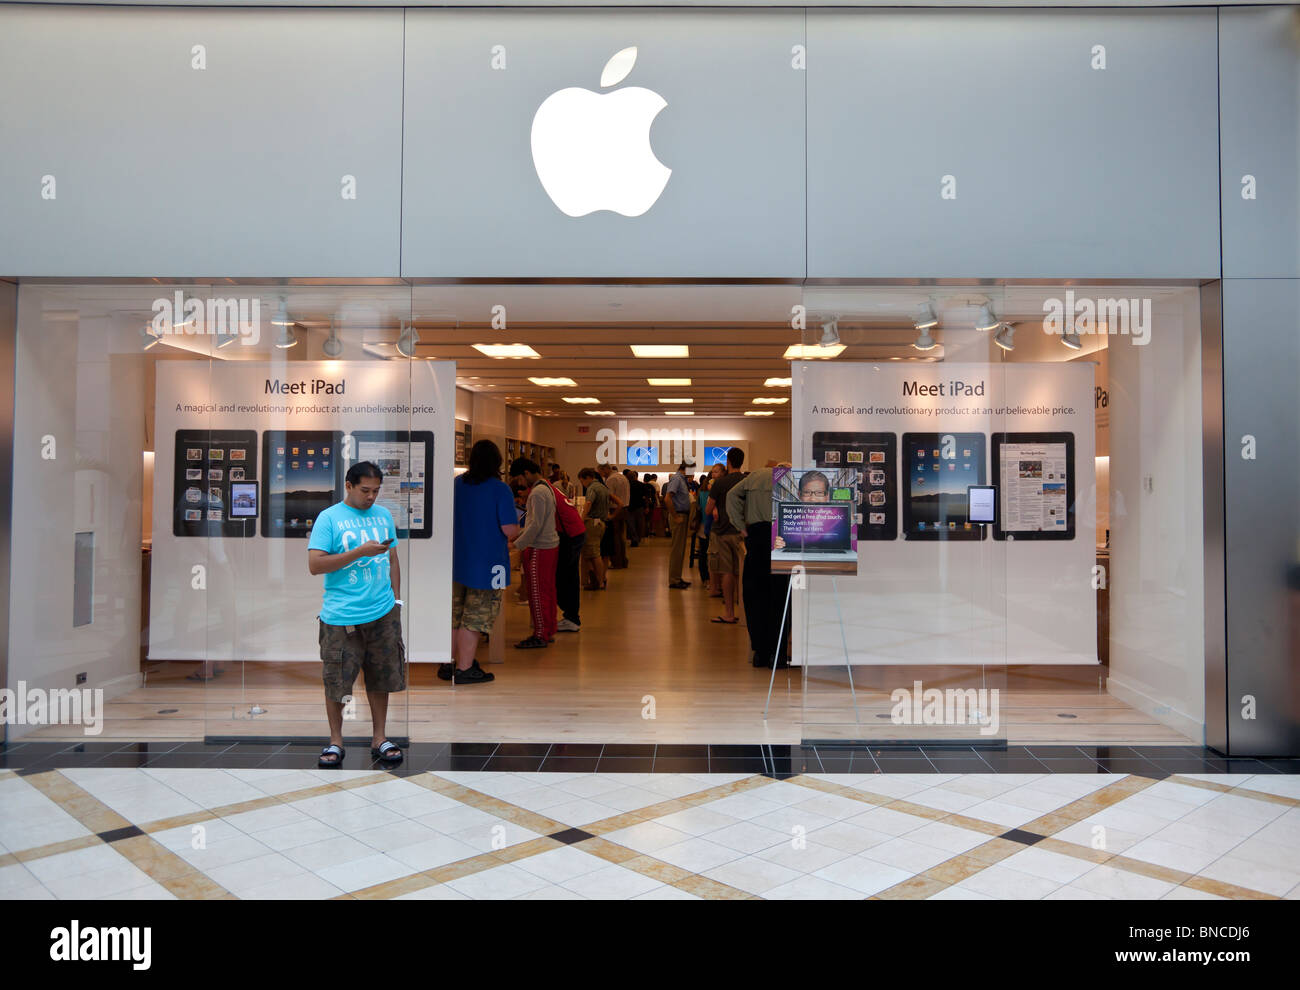 Apple Store, King of Prussia Mall, près de Philadelphie, PA, USA Banque D'Images